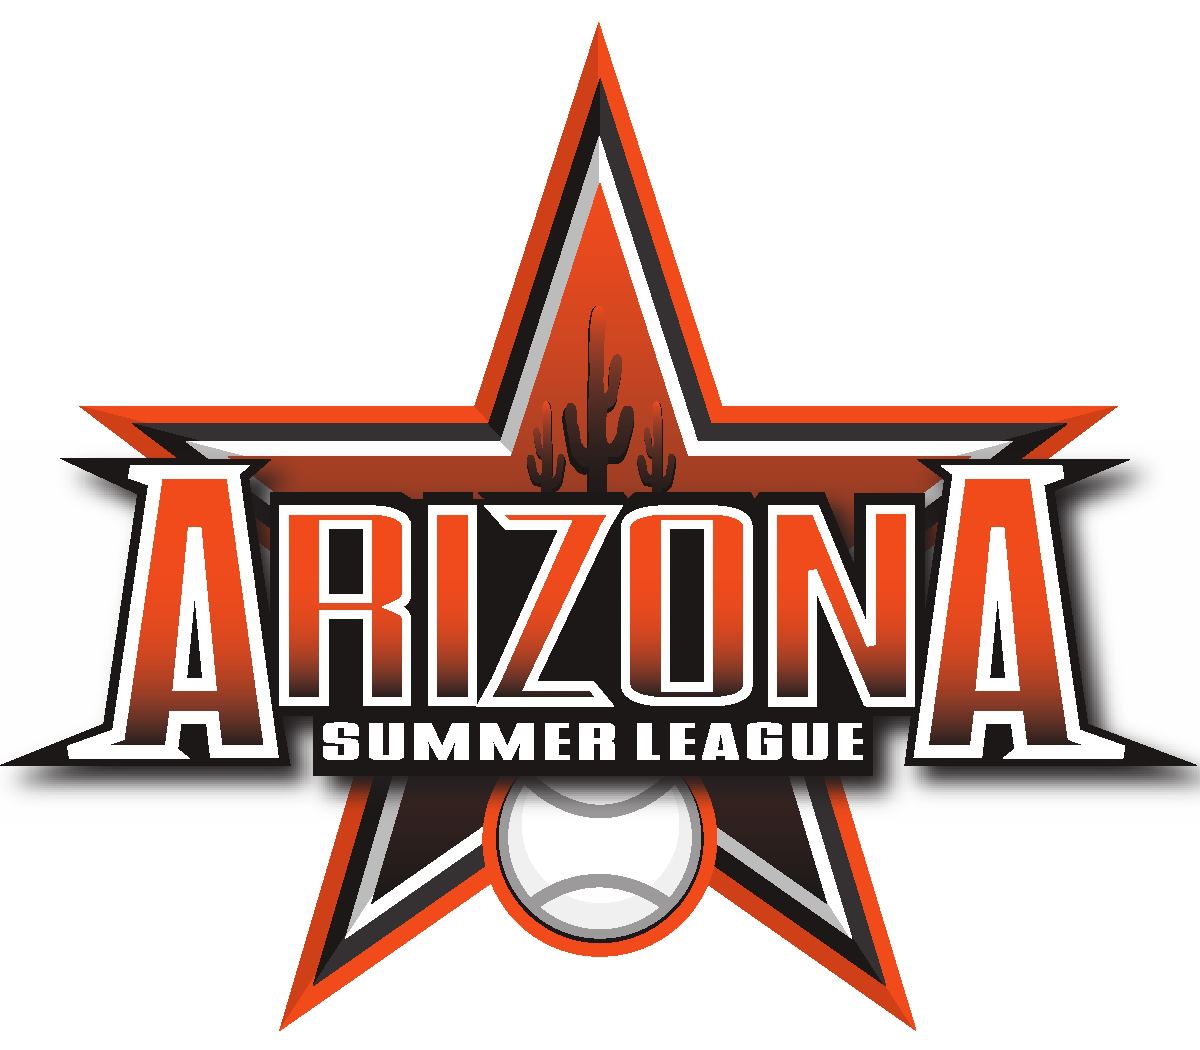 Arizona Summer League | Organizational Profile, Work & Jobs